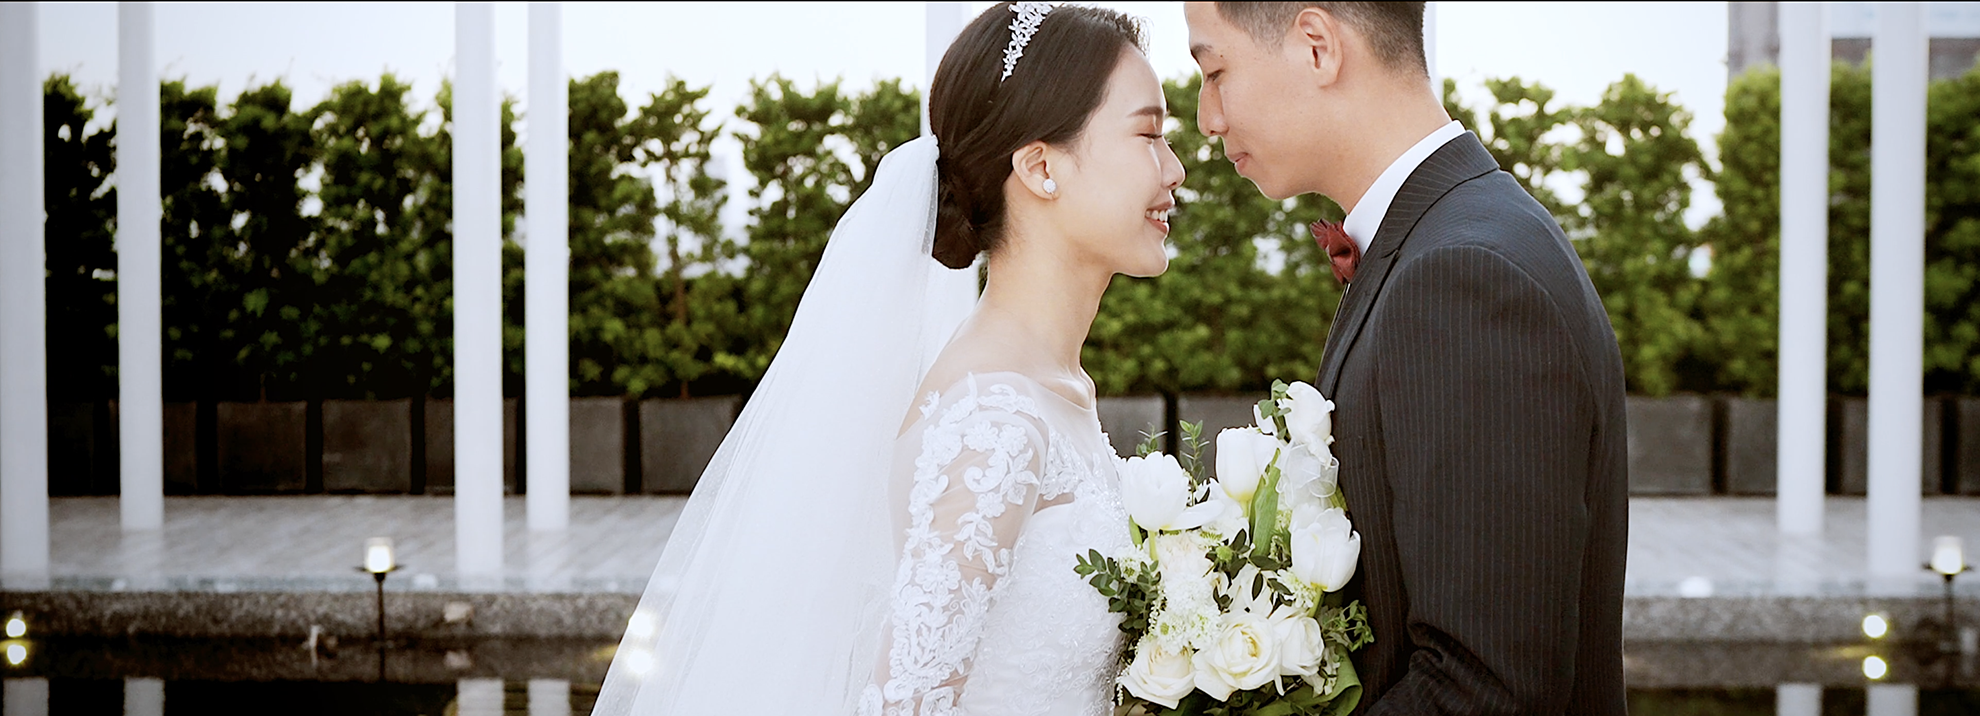 來分享個高質感4k婚禮錄影-推薦台中瑪查影像婚錄-婚禮廠商評價